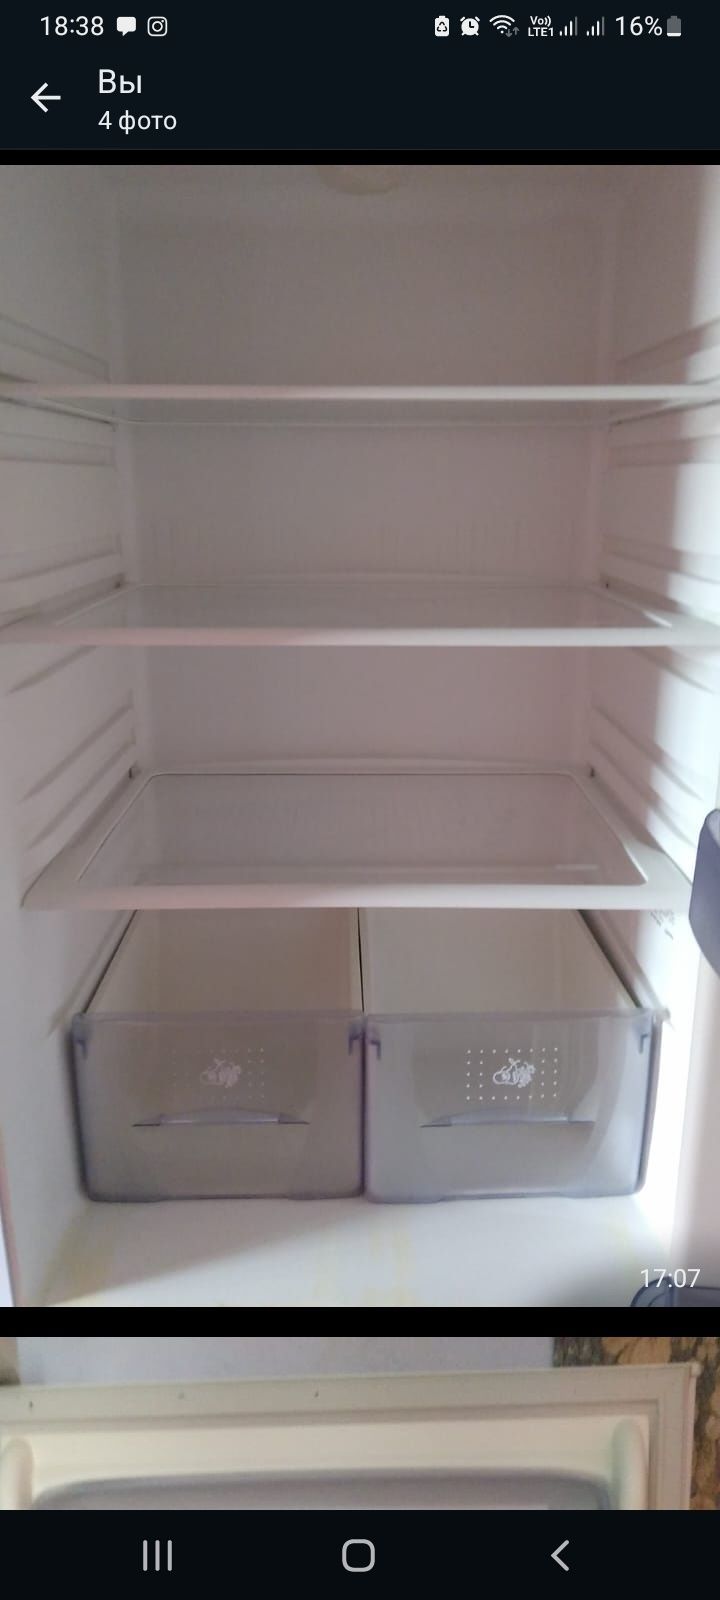 Продам холодильник срочно в хорошем состоянии 30 тысяч